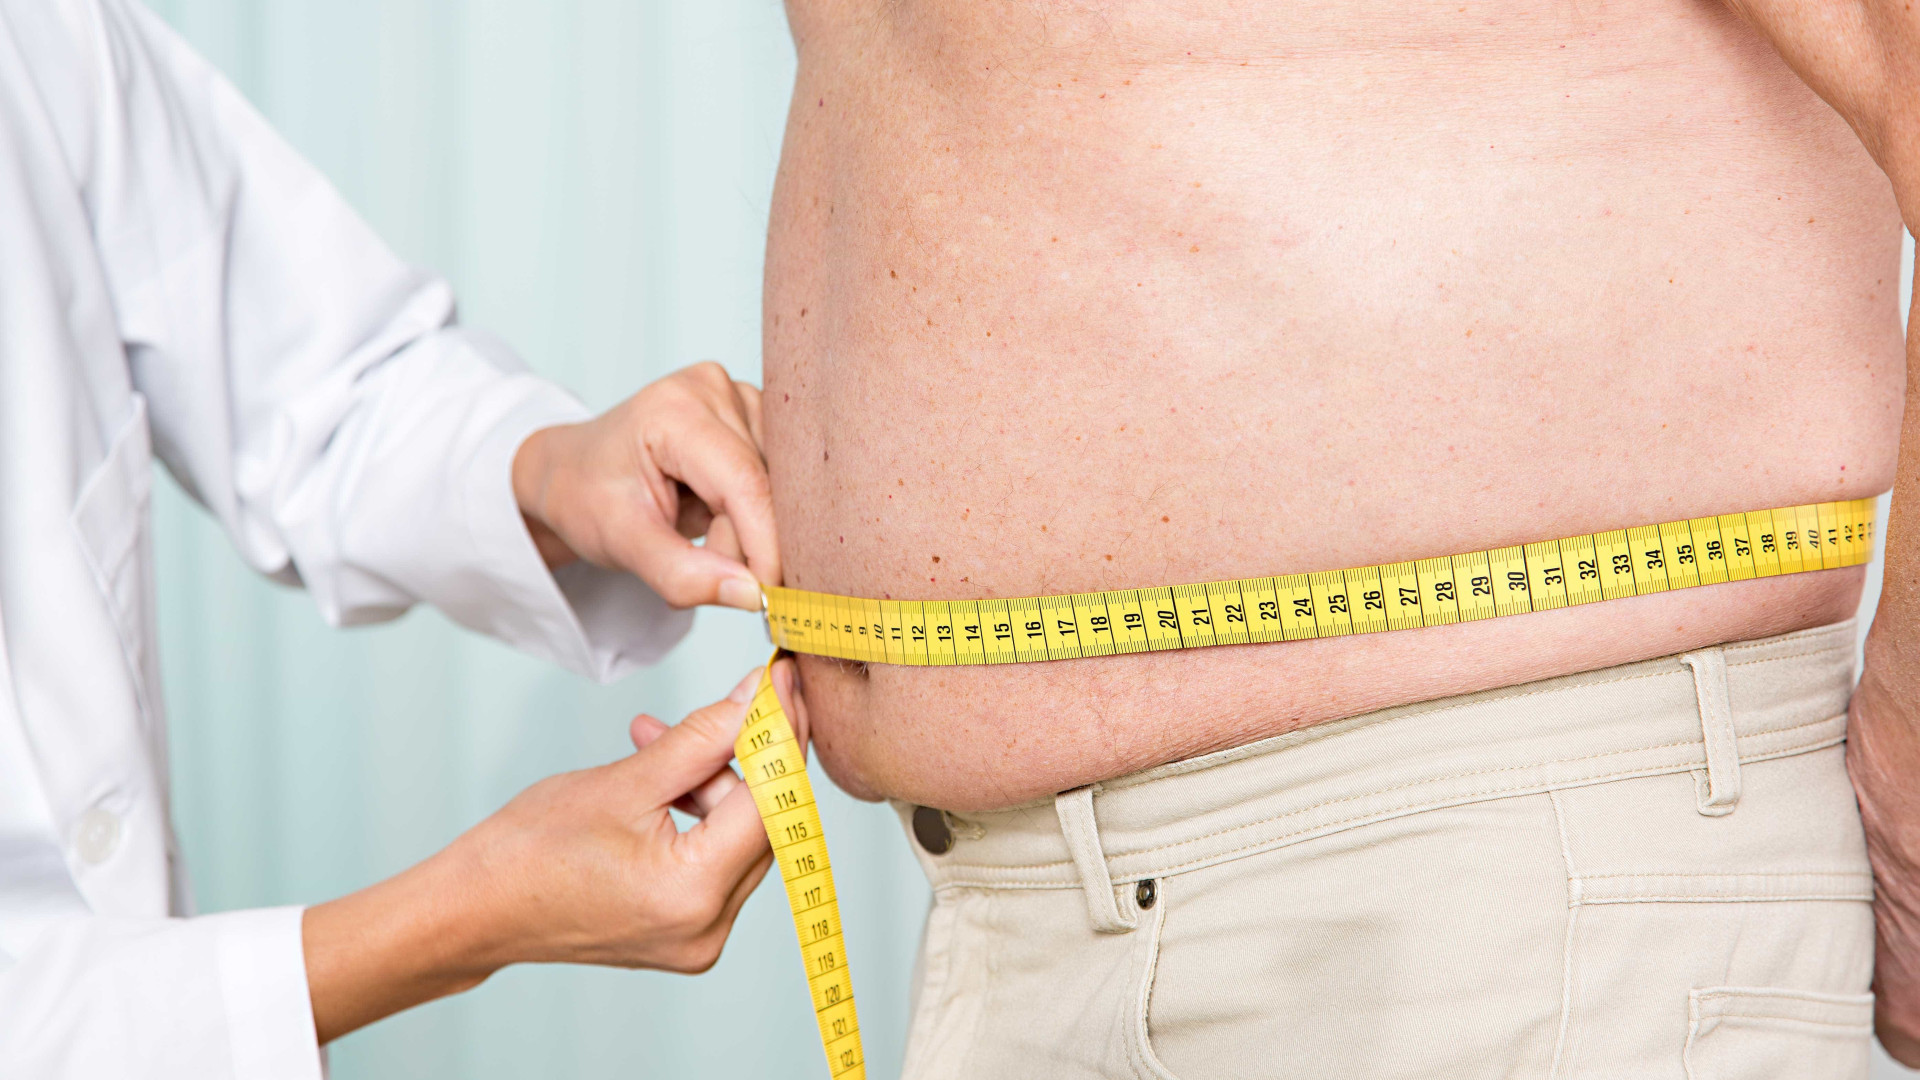 Obesidade contribui para surgimento
de 8 tipos de câncer, diz ciência